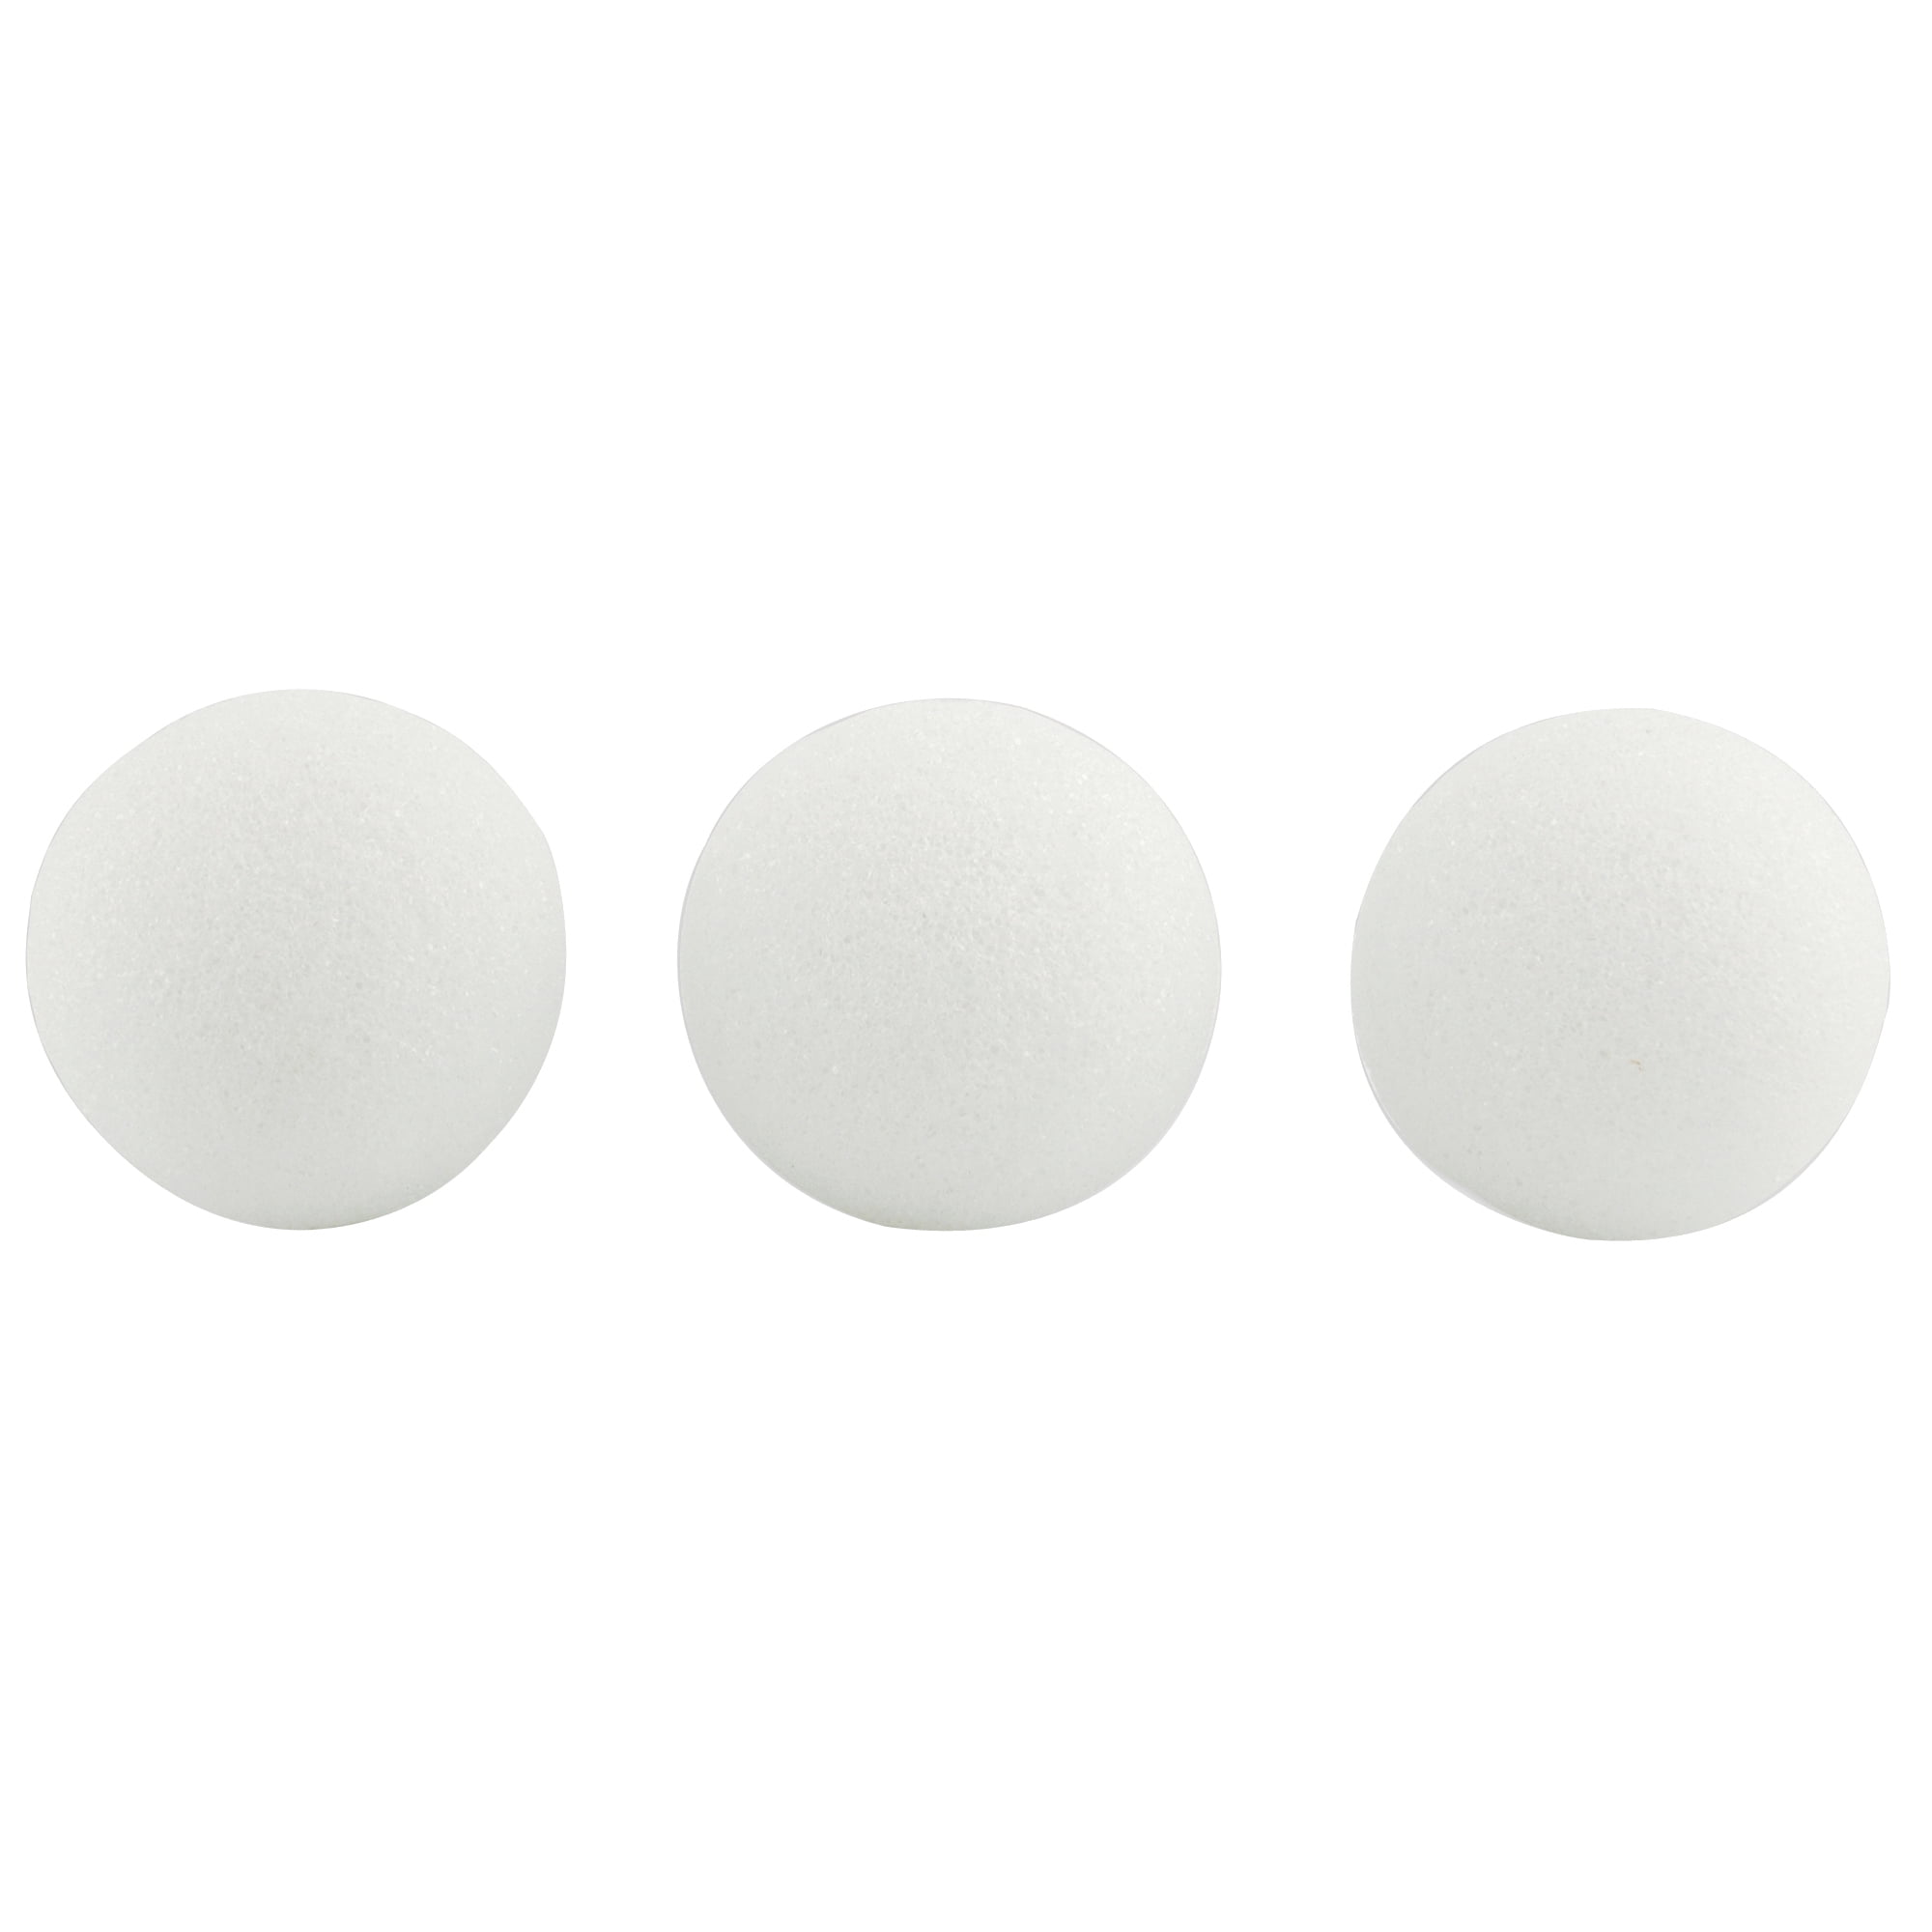 Foam Balls 30 mm diameter Polystyrene Spheres Balls Pack of 50 AP/695/PSC 